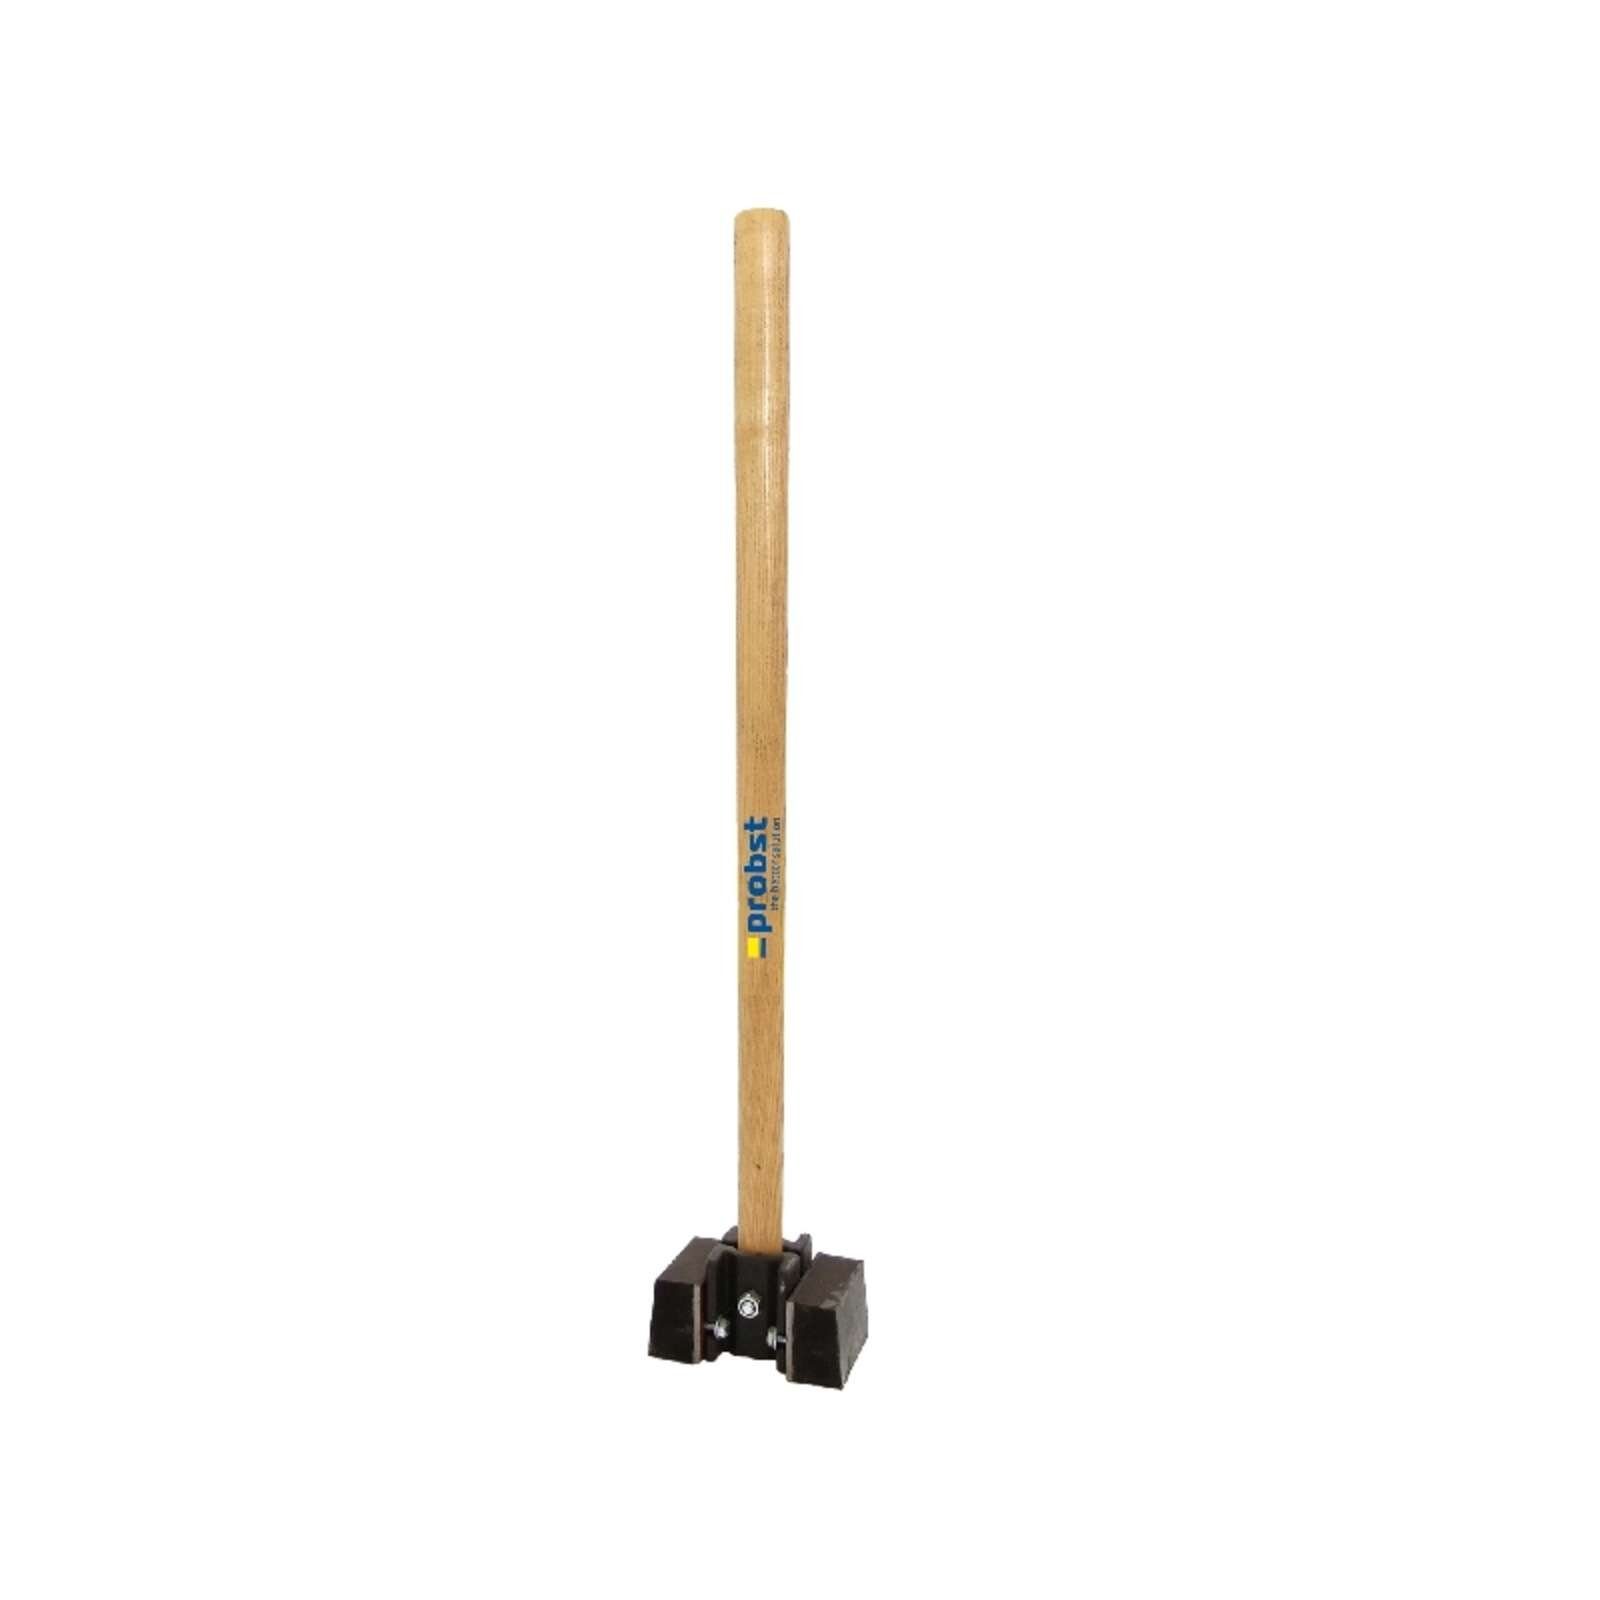 HaWe 230.80 Gummi-Hammer HaWe Plattenlegerhammer, 2,2kg, 800mm Schonhammer, Hammer